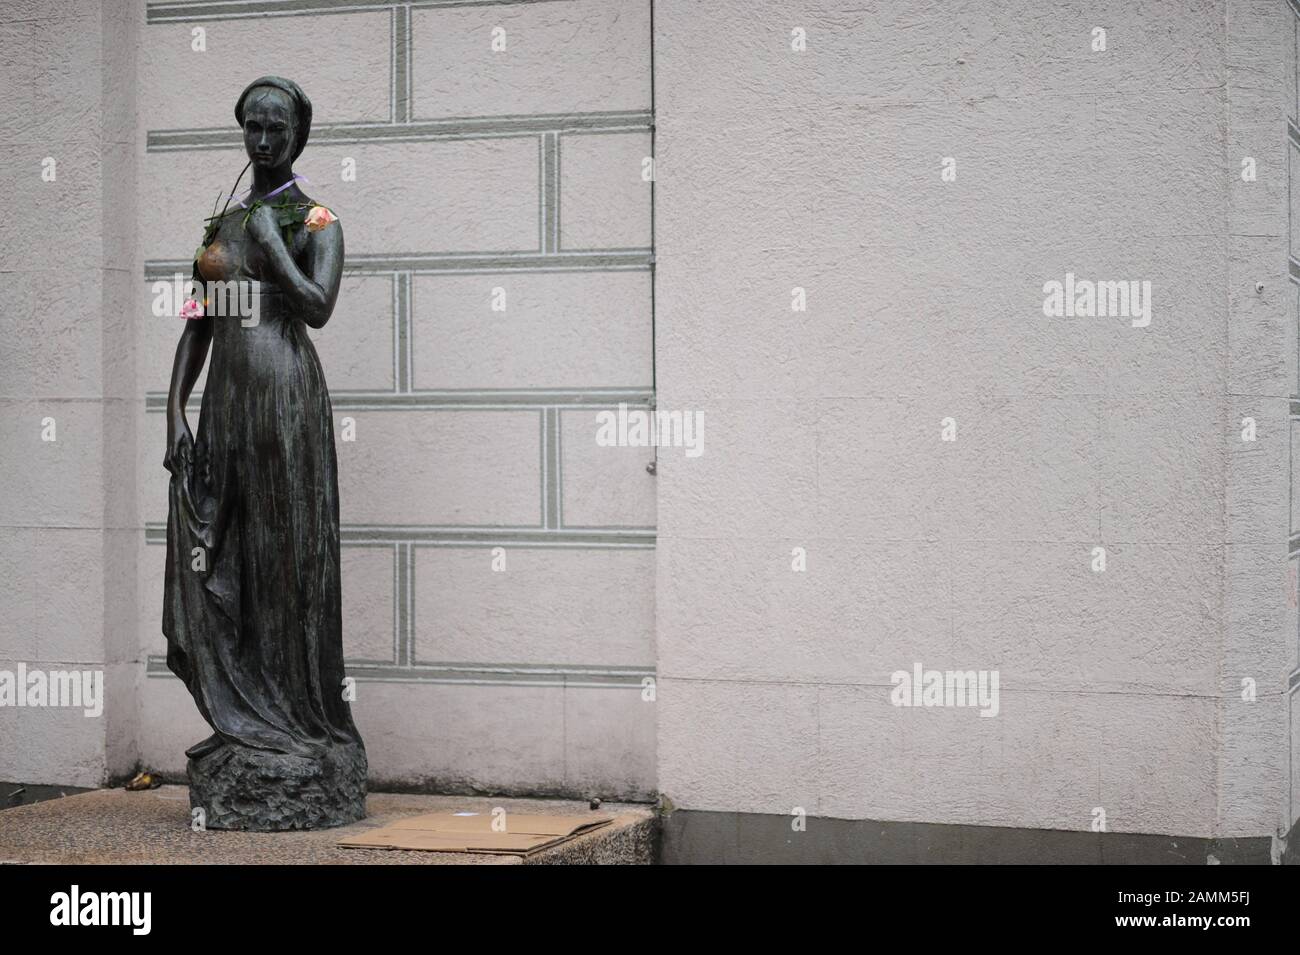 Kopie der Bronzestatue Juliet von Nereo Costantini vor dem Turm des Alten Rathauses am Münchner Marienplatz. Das Denkmal aus dem Jahr 1974 ist ein Geschenk der Sparkasse von Verona, Vicenza und Belluno. Verona ist eine Partnerstadt Münchens im Jahr 1960. [Automatisierte Übersetzung] Stockfoto